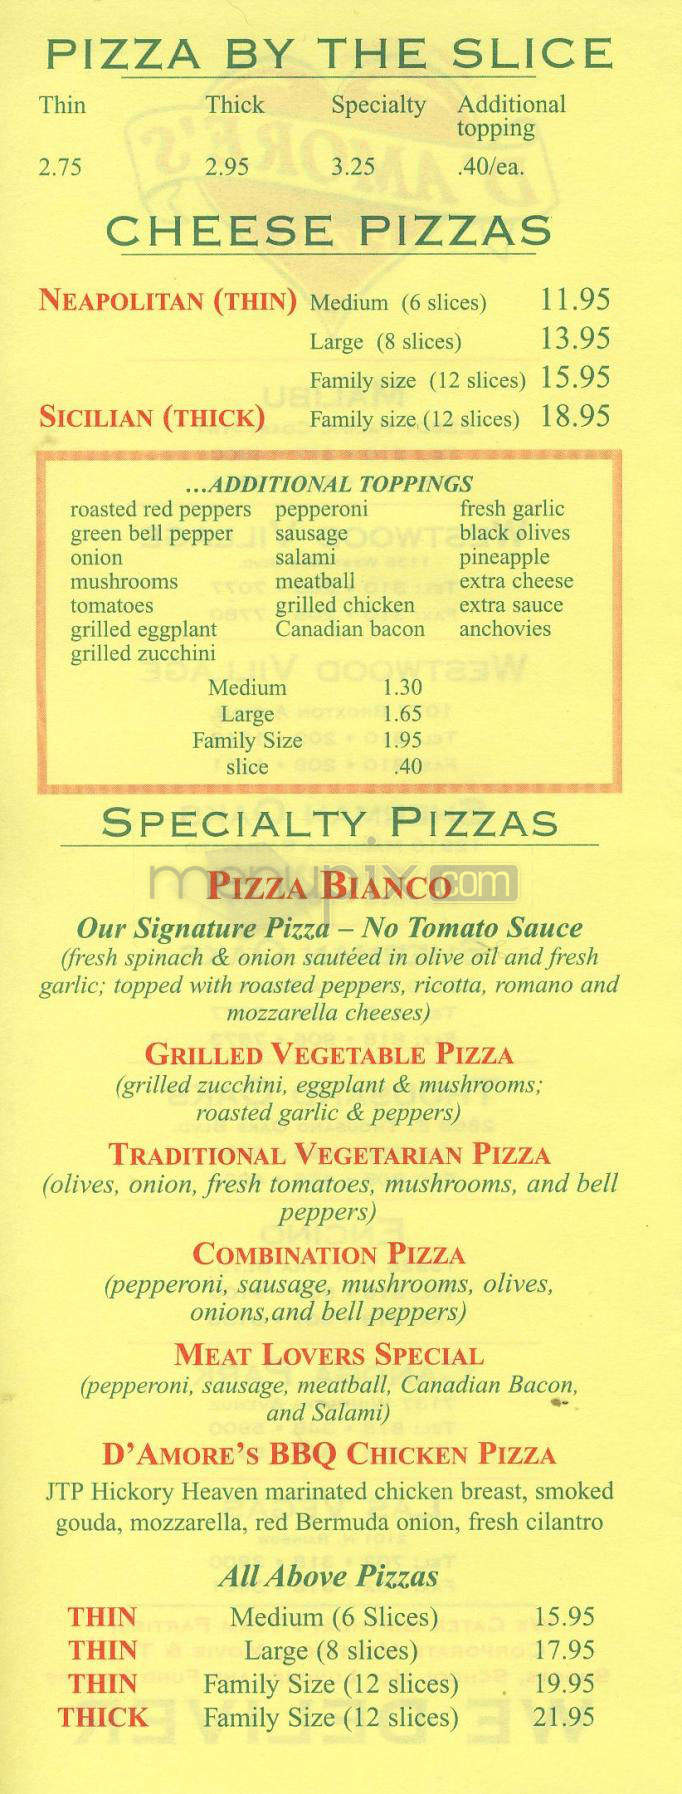 /200060/DAmore-Pizza-Los-Angeles-CA - Los Angeles, CA